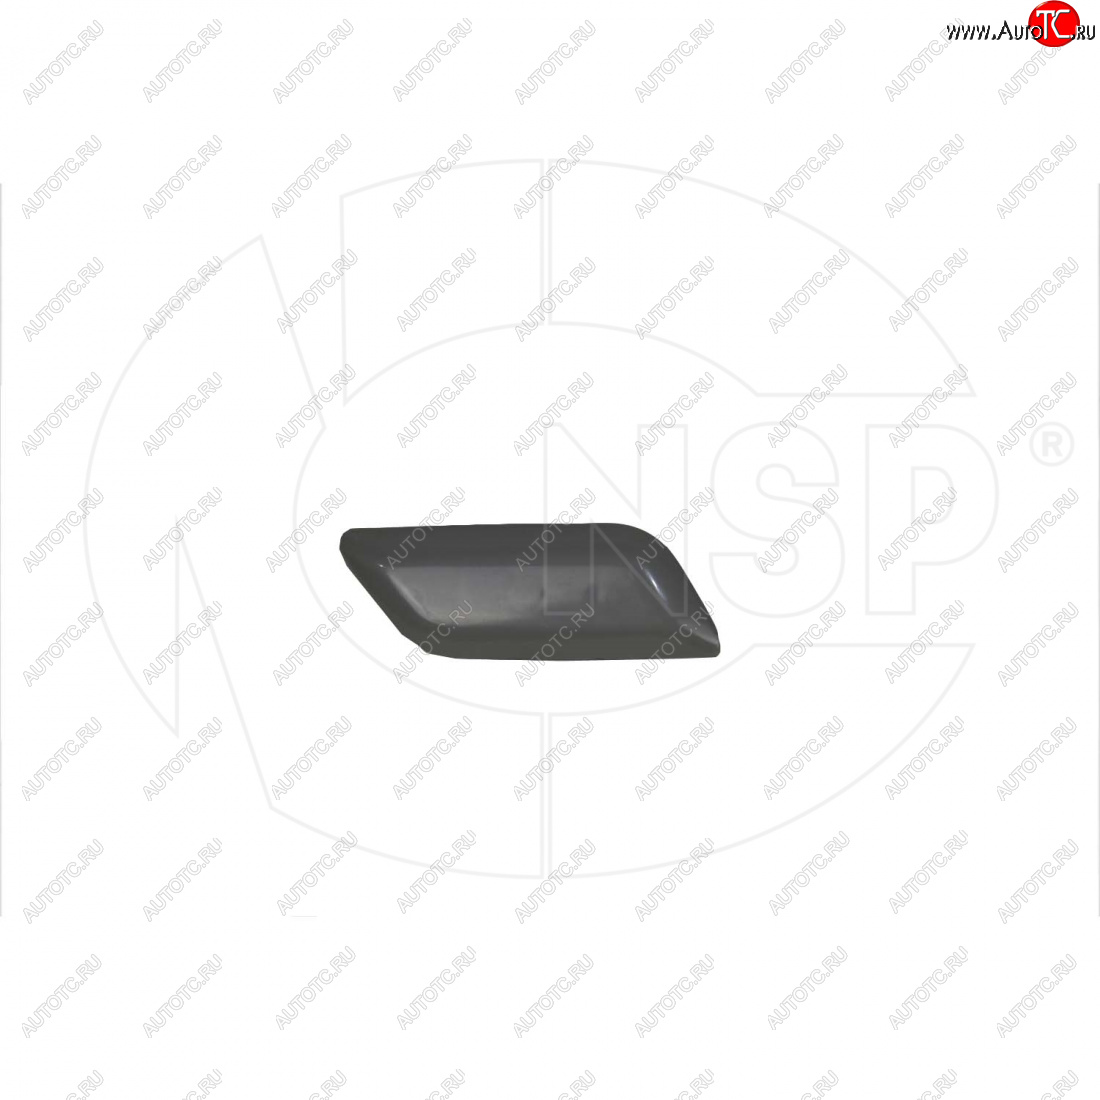 299 р. Крышка форсунки омывателя правой фары NSP Toyota Camry XV50 дорестайлинг (2011-2014) (Неокрашенная)